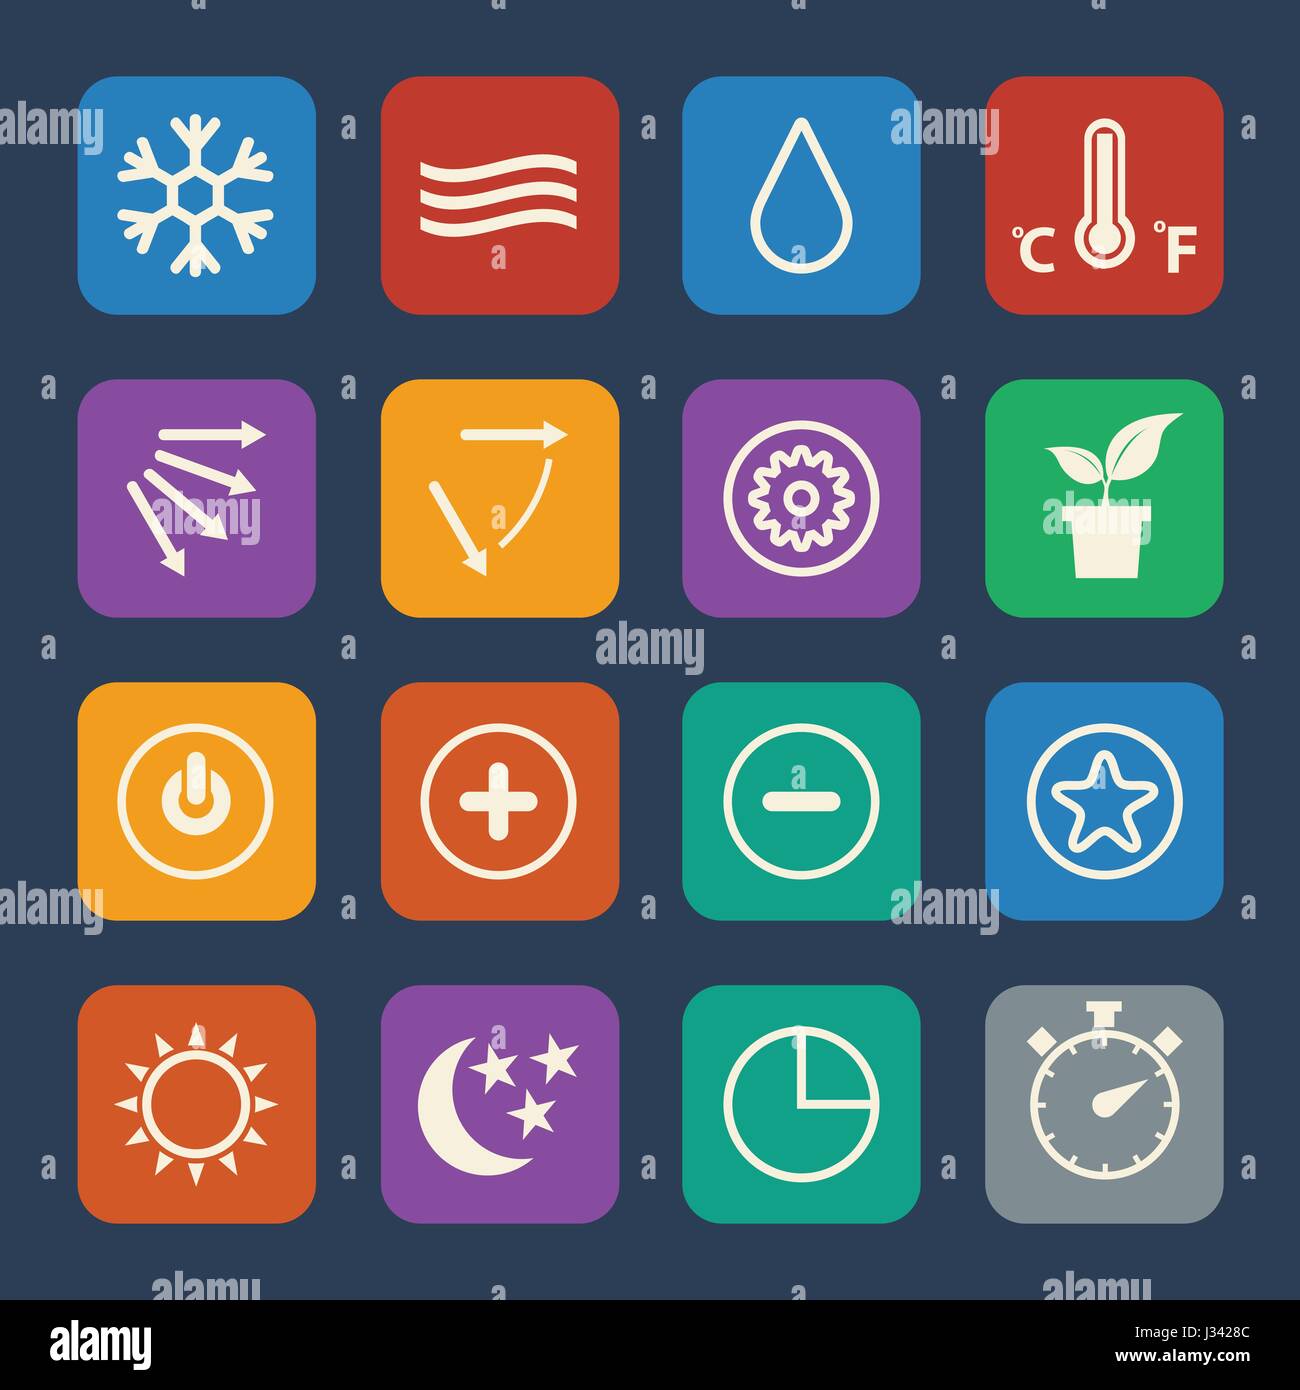 Symbol für eine Klimaanlage. Vektor-Icons set. Flaches Design für die Website und Mobile Anwendungen. Stock Vektor